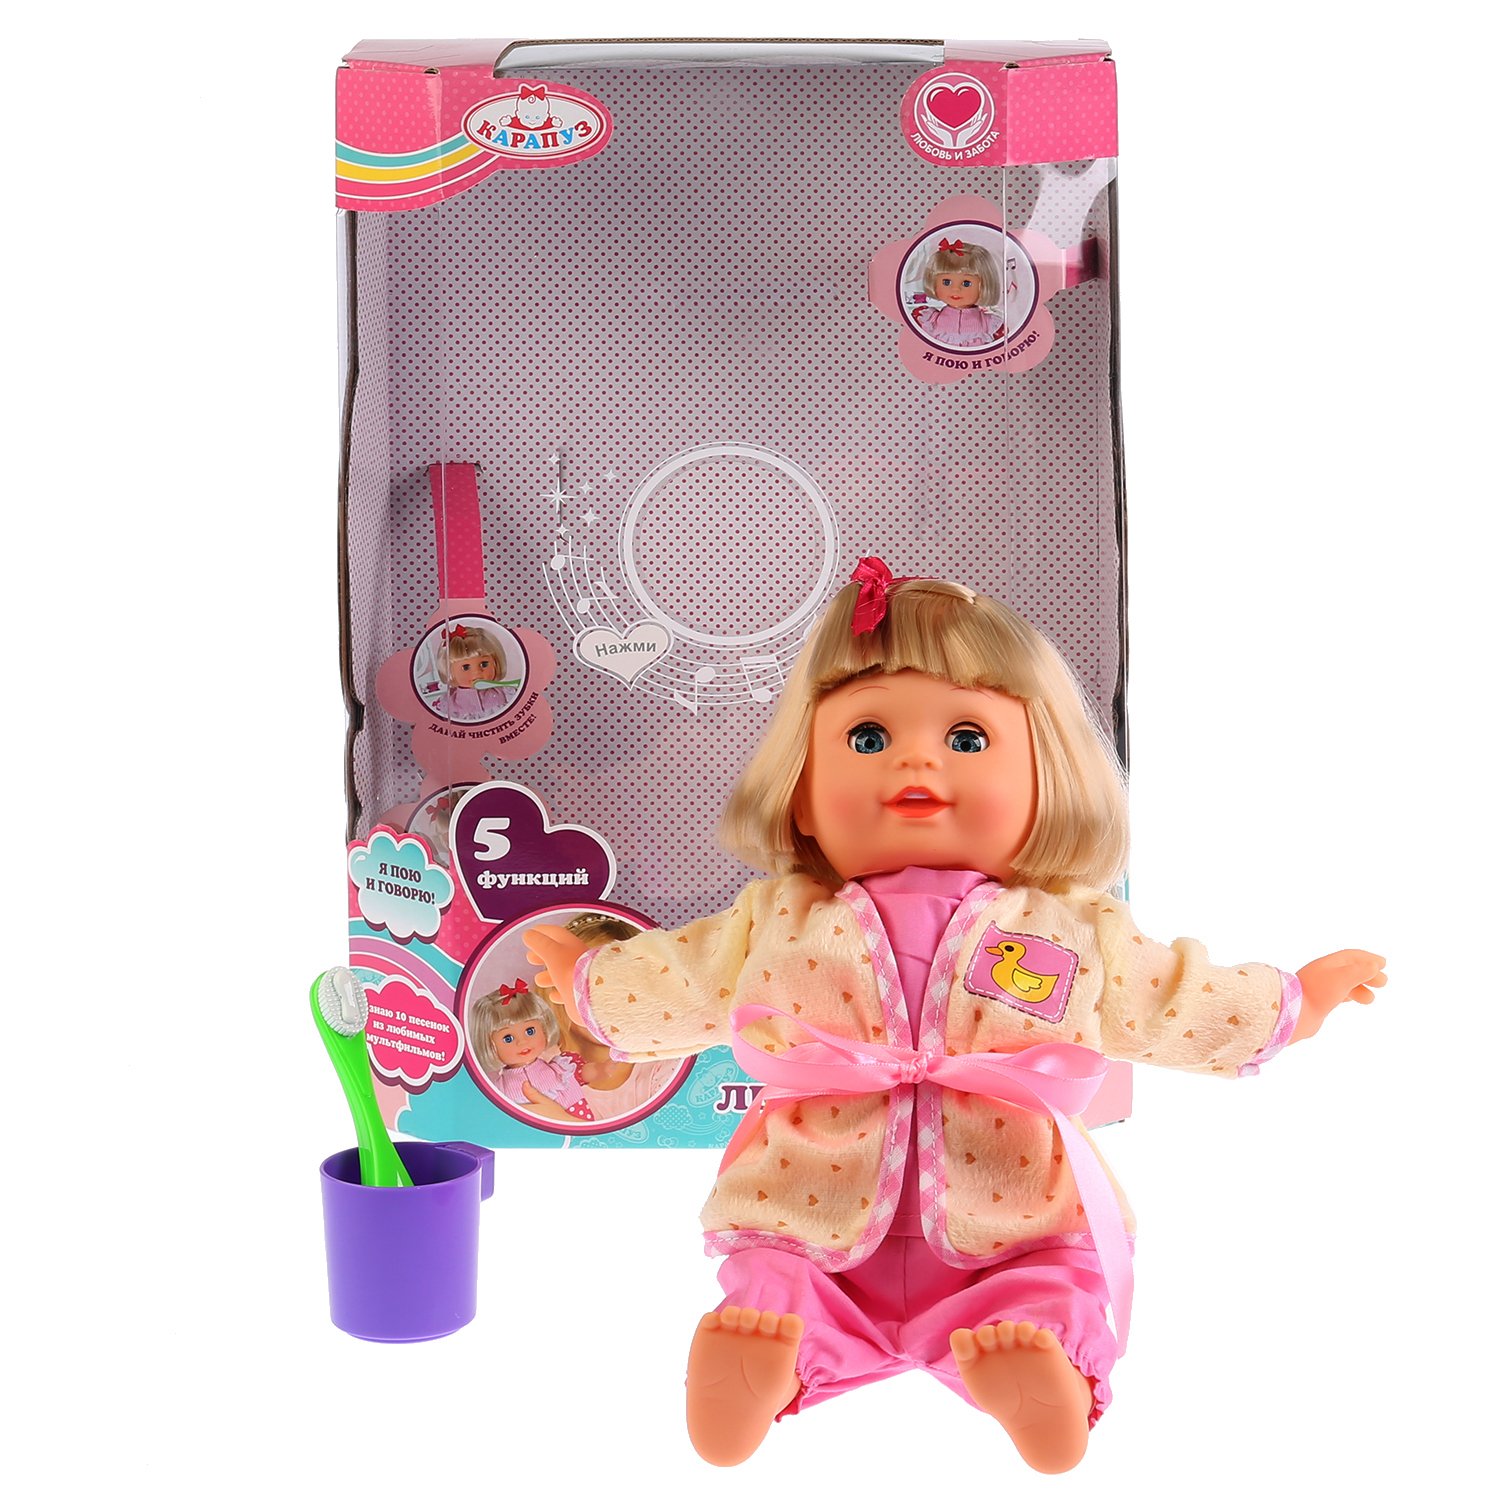 Интерактивная кукла с мягким телом - Леночка, 36 см, 5 функция, 10 песен из м/ф, потешка, чистит зубки  